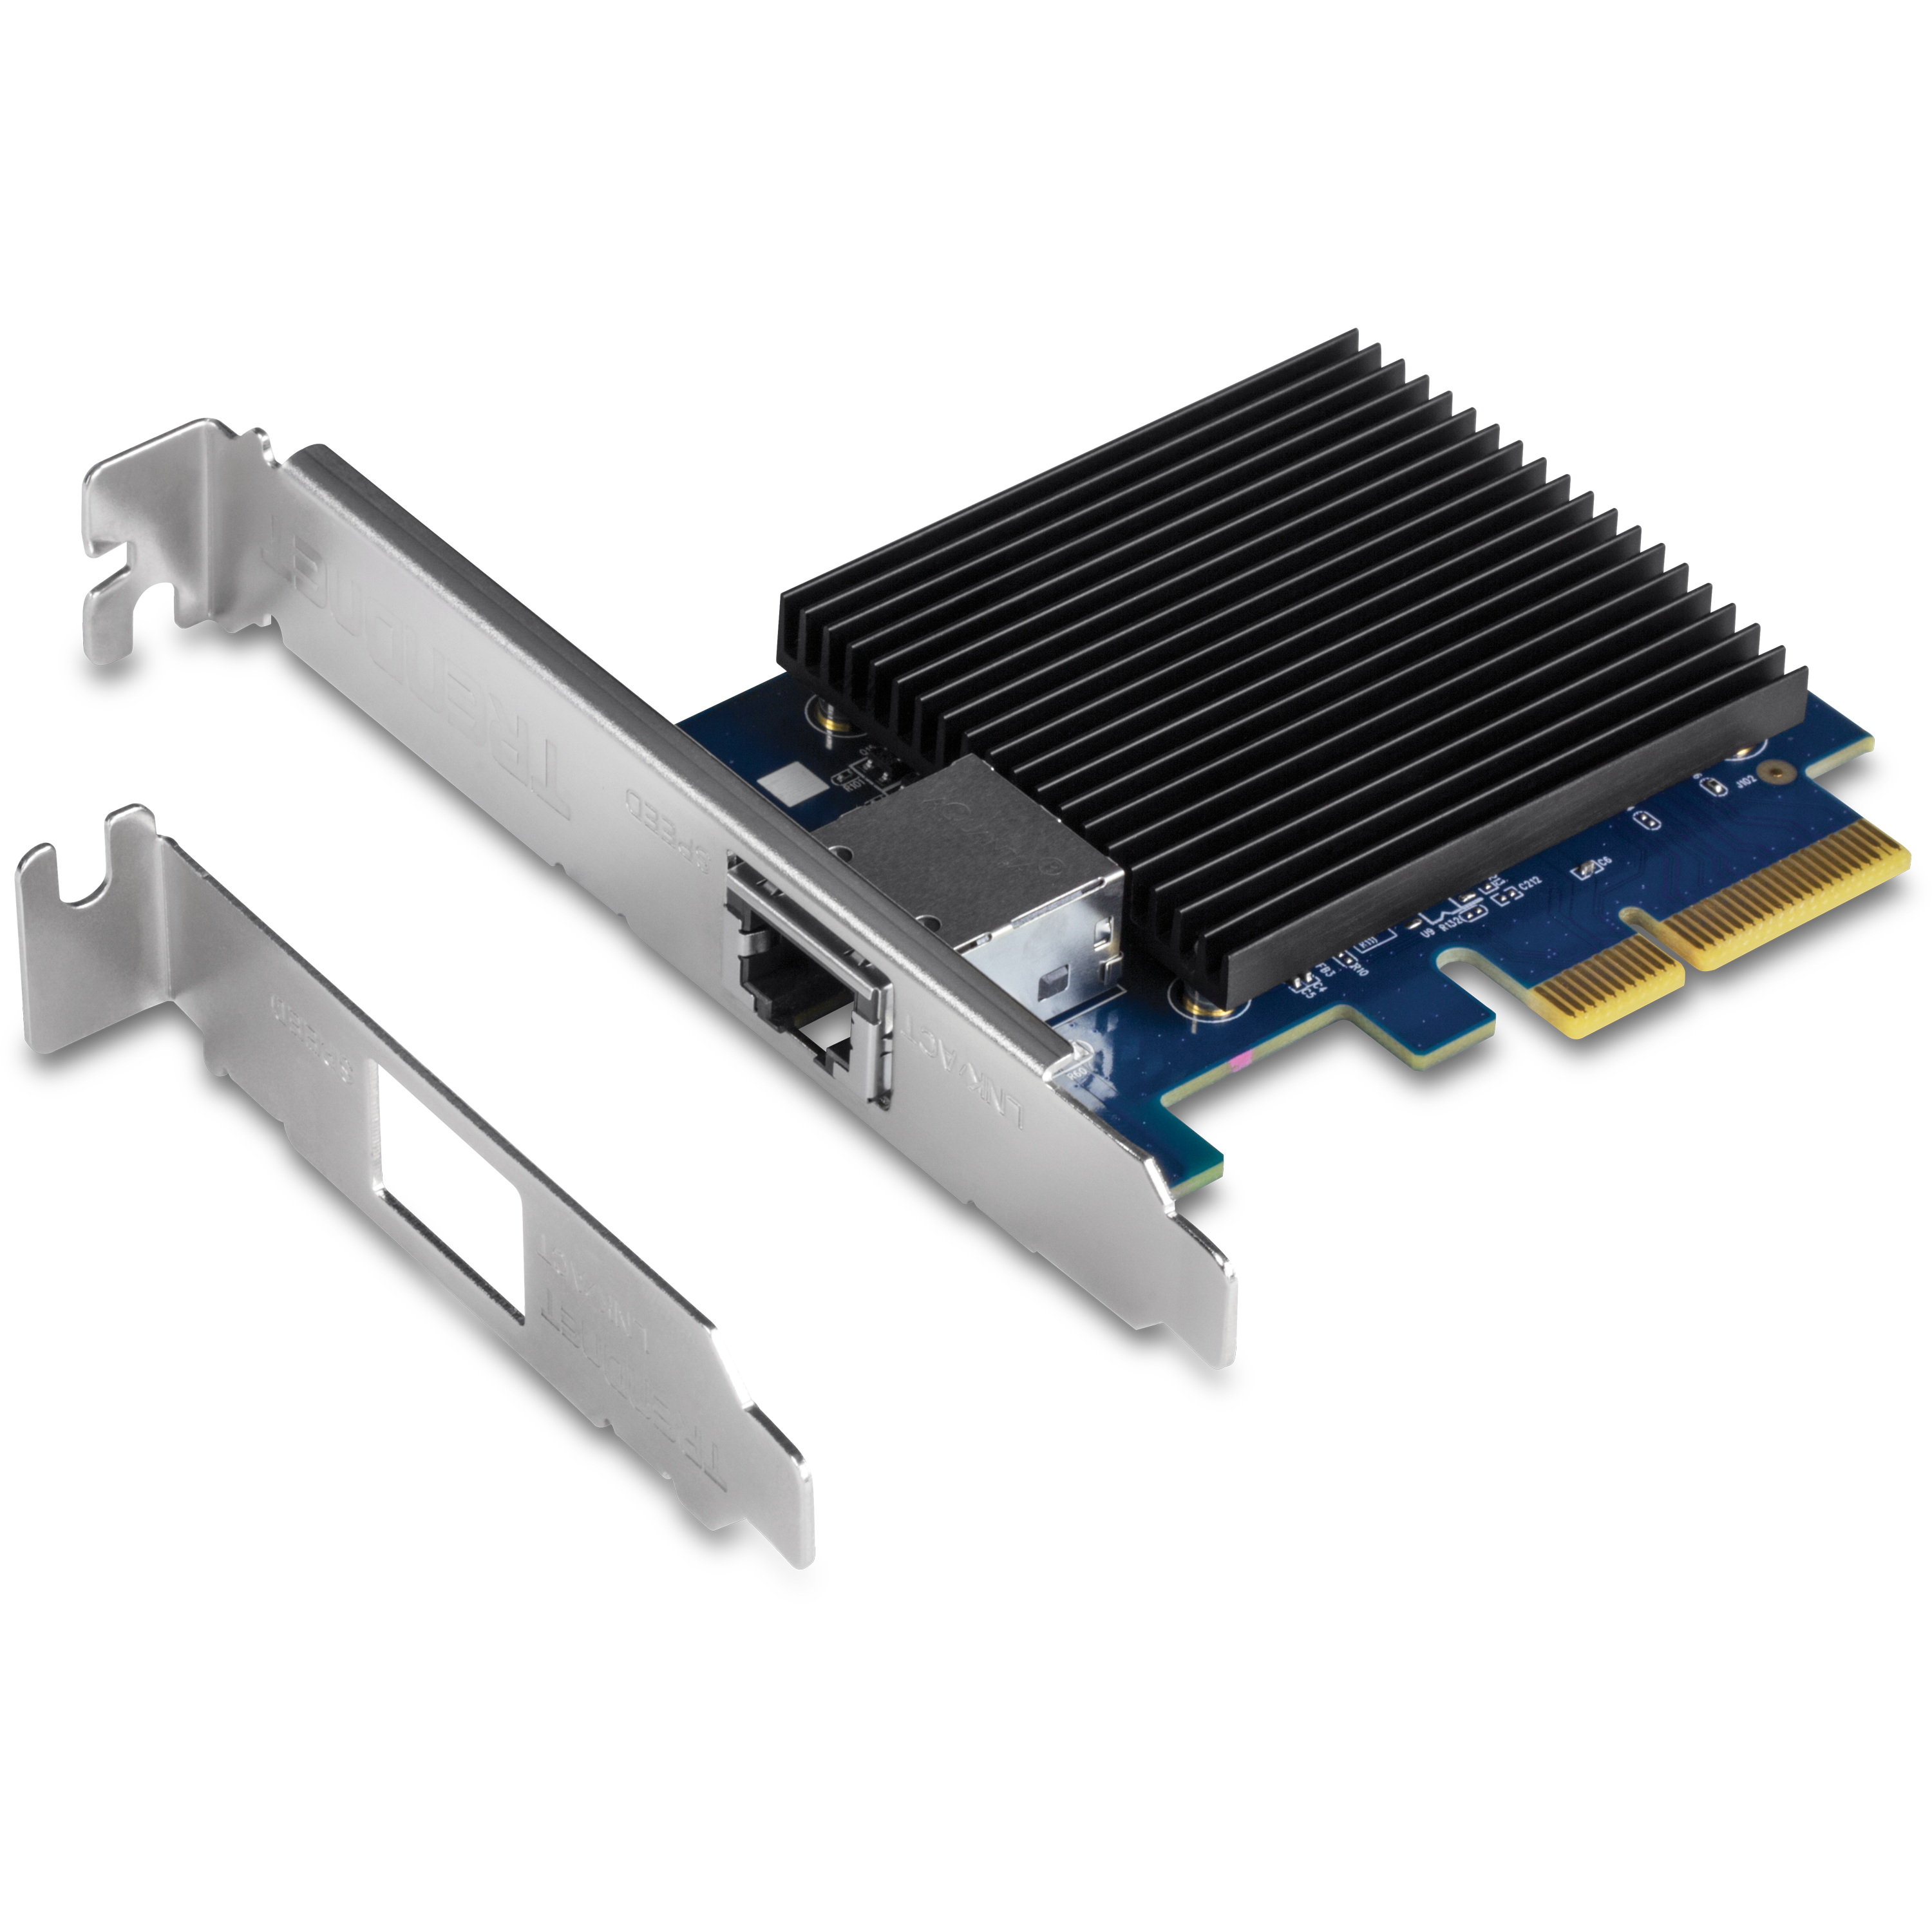 10 Gigabit PCIe Network Adapter, TEG-10GECTX